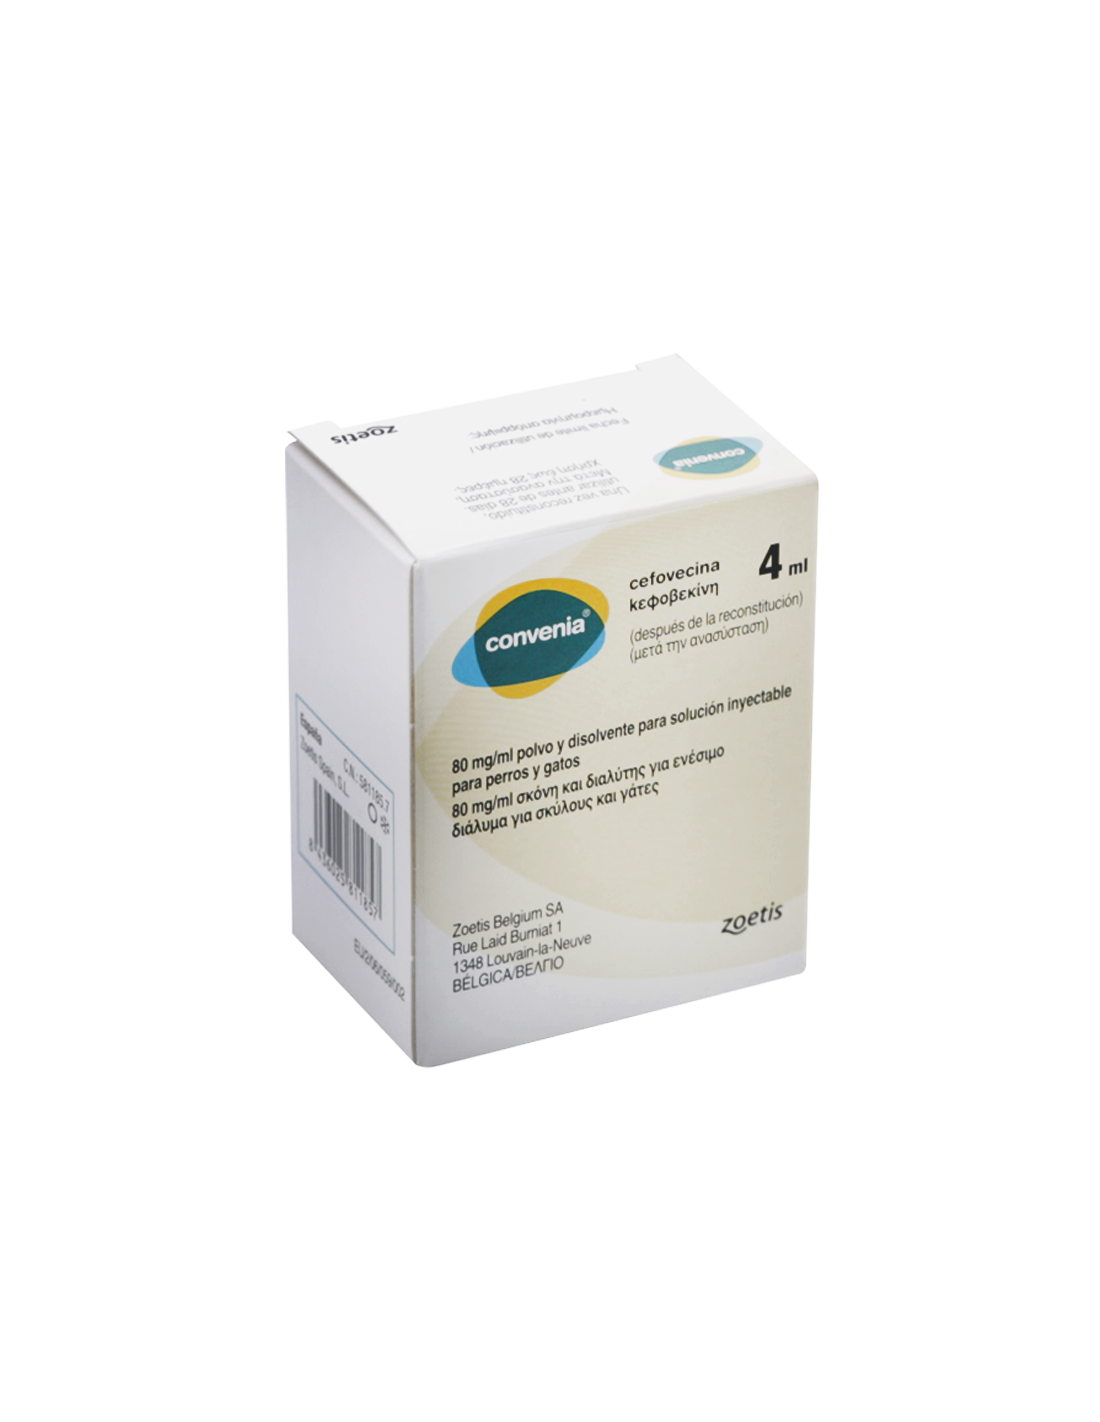 convenia-80-mg-ml-4-ml-de-zoetis